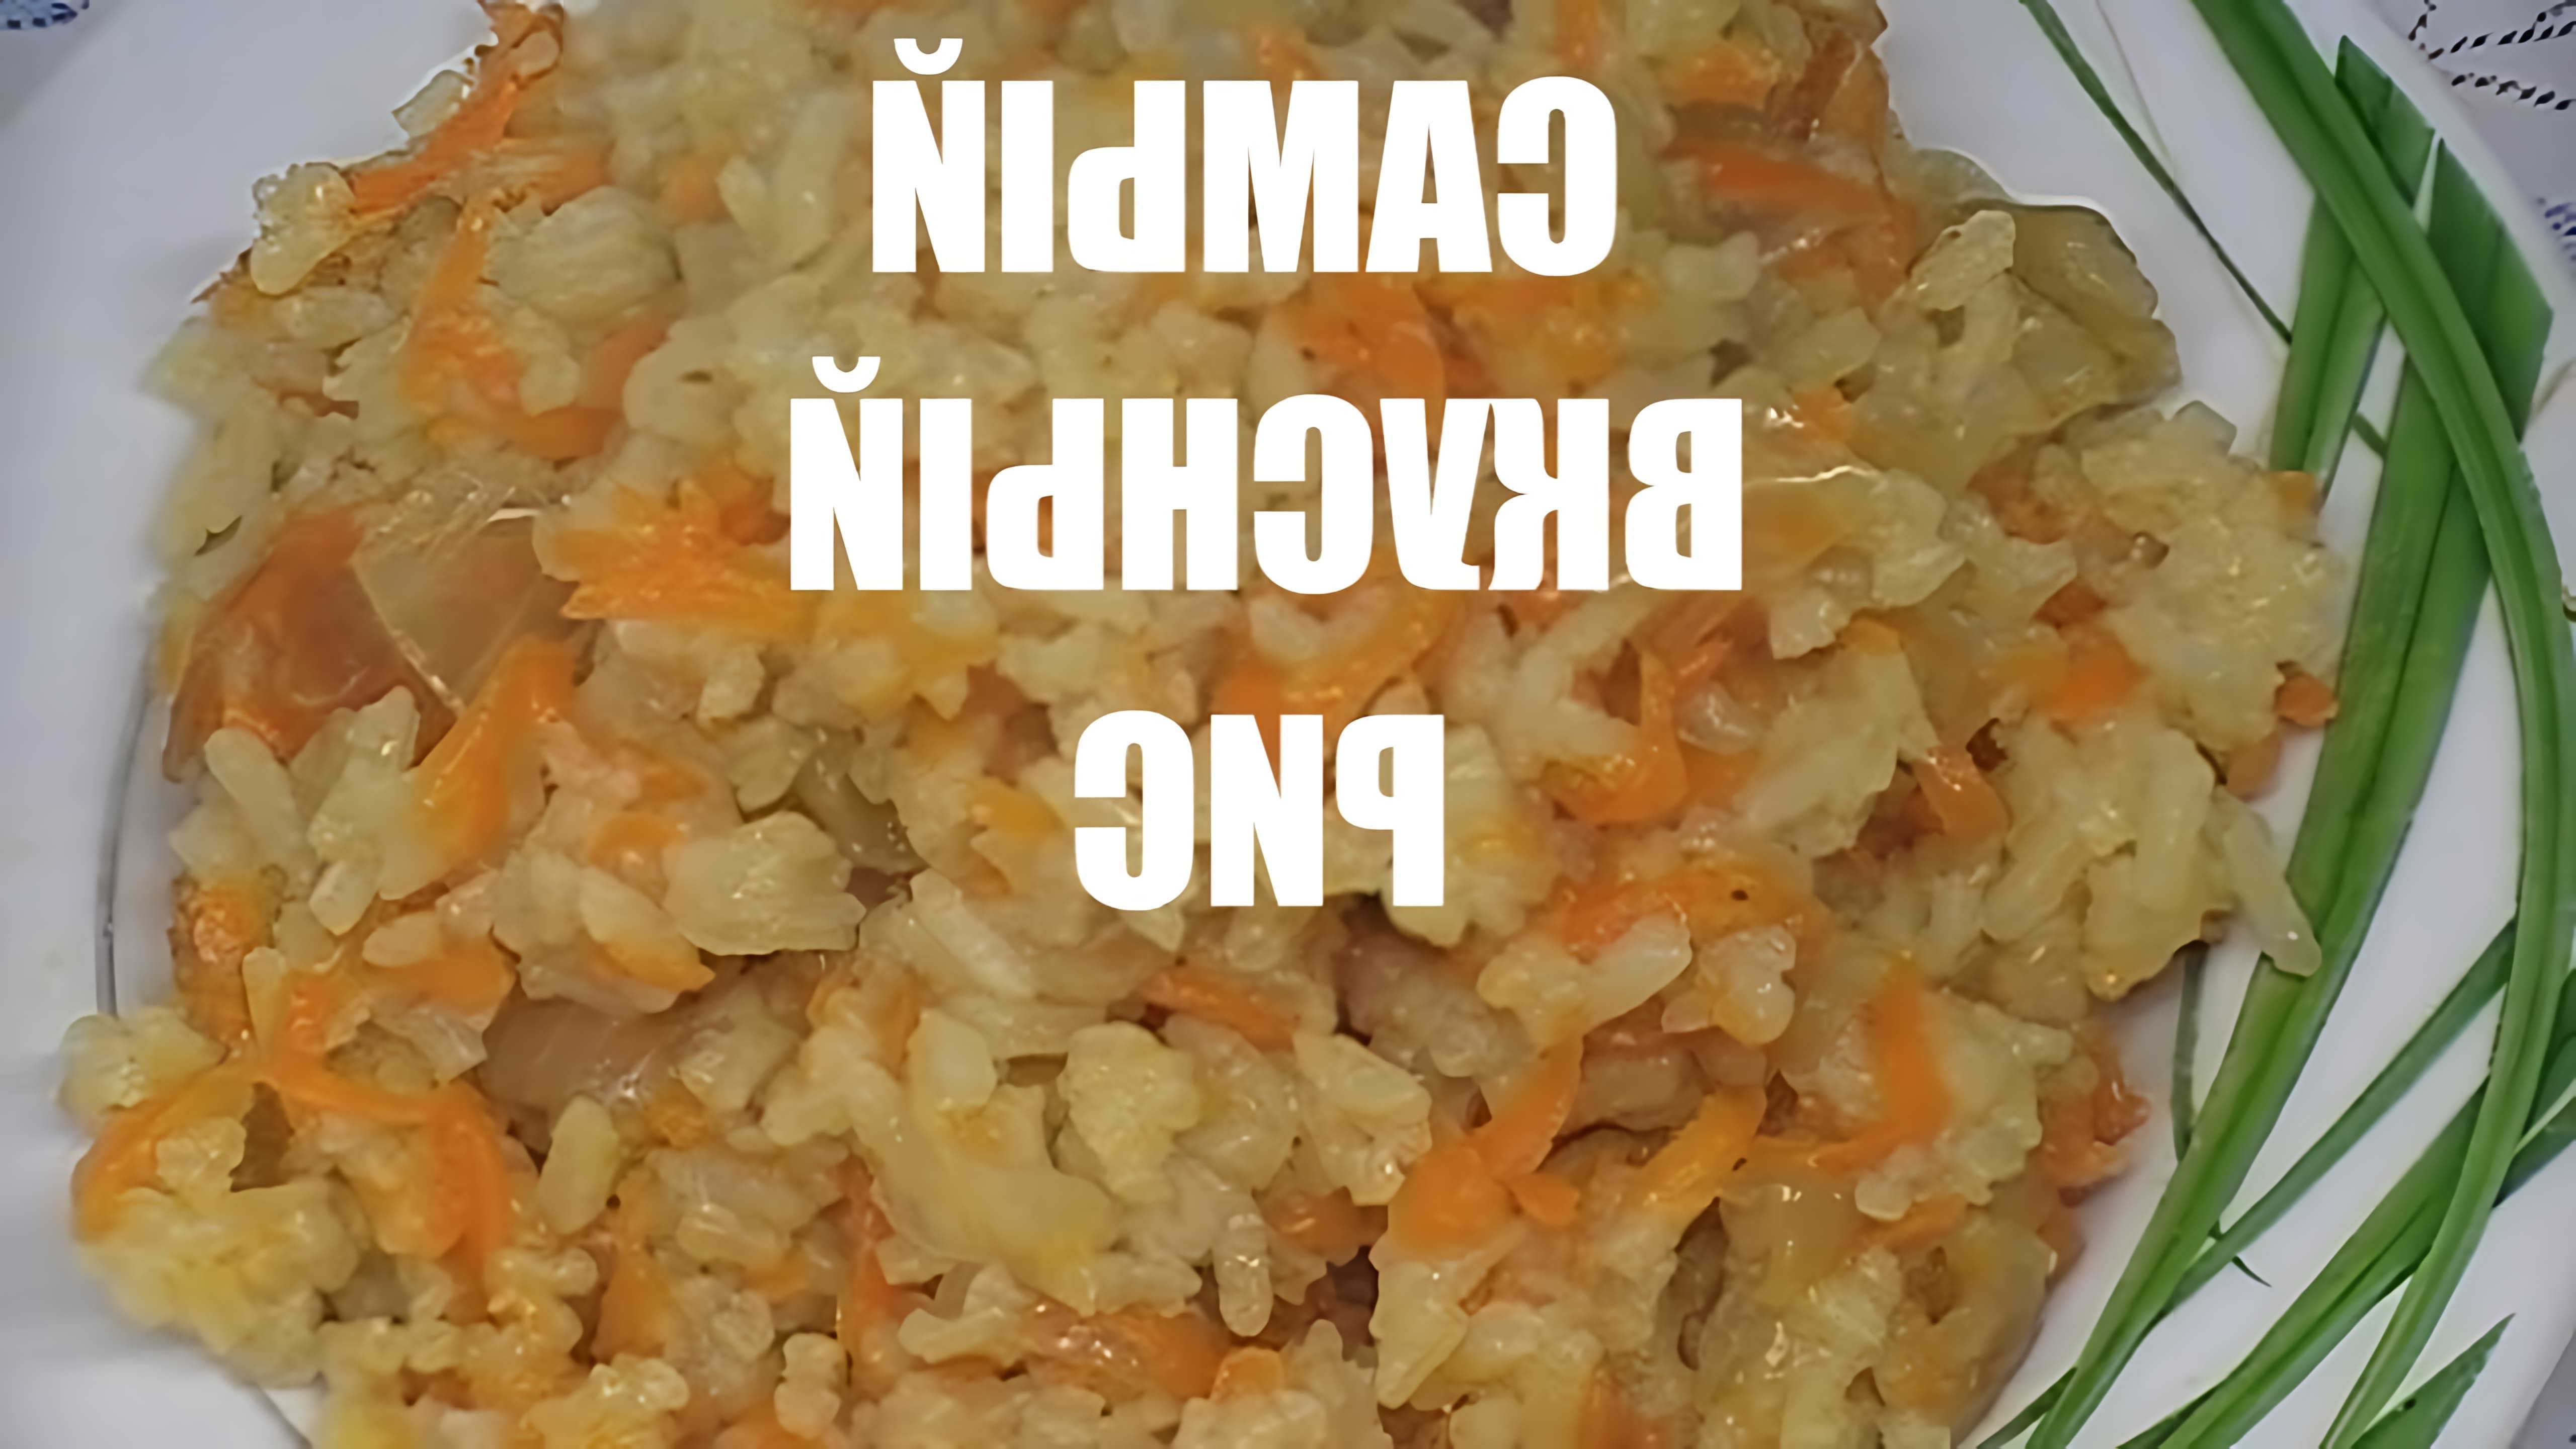 В этом видео демонстрируется процесс приготовления риса с луком и морковью на сковороде